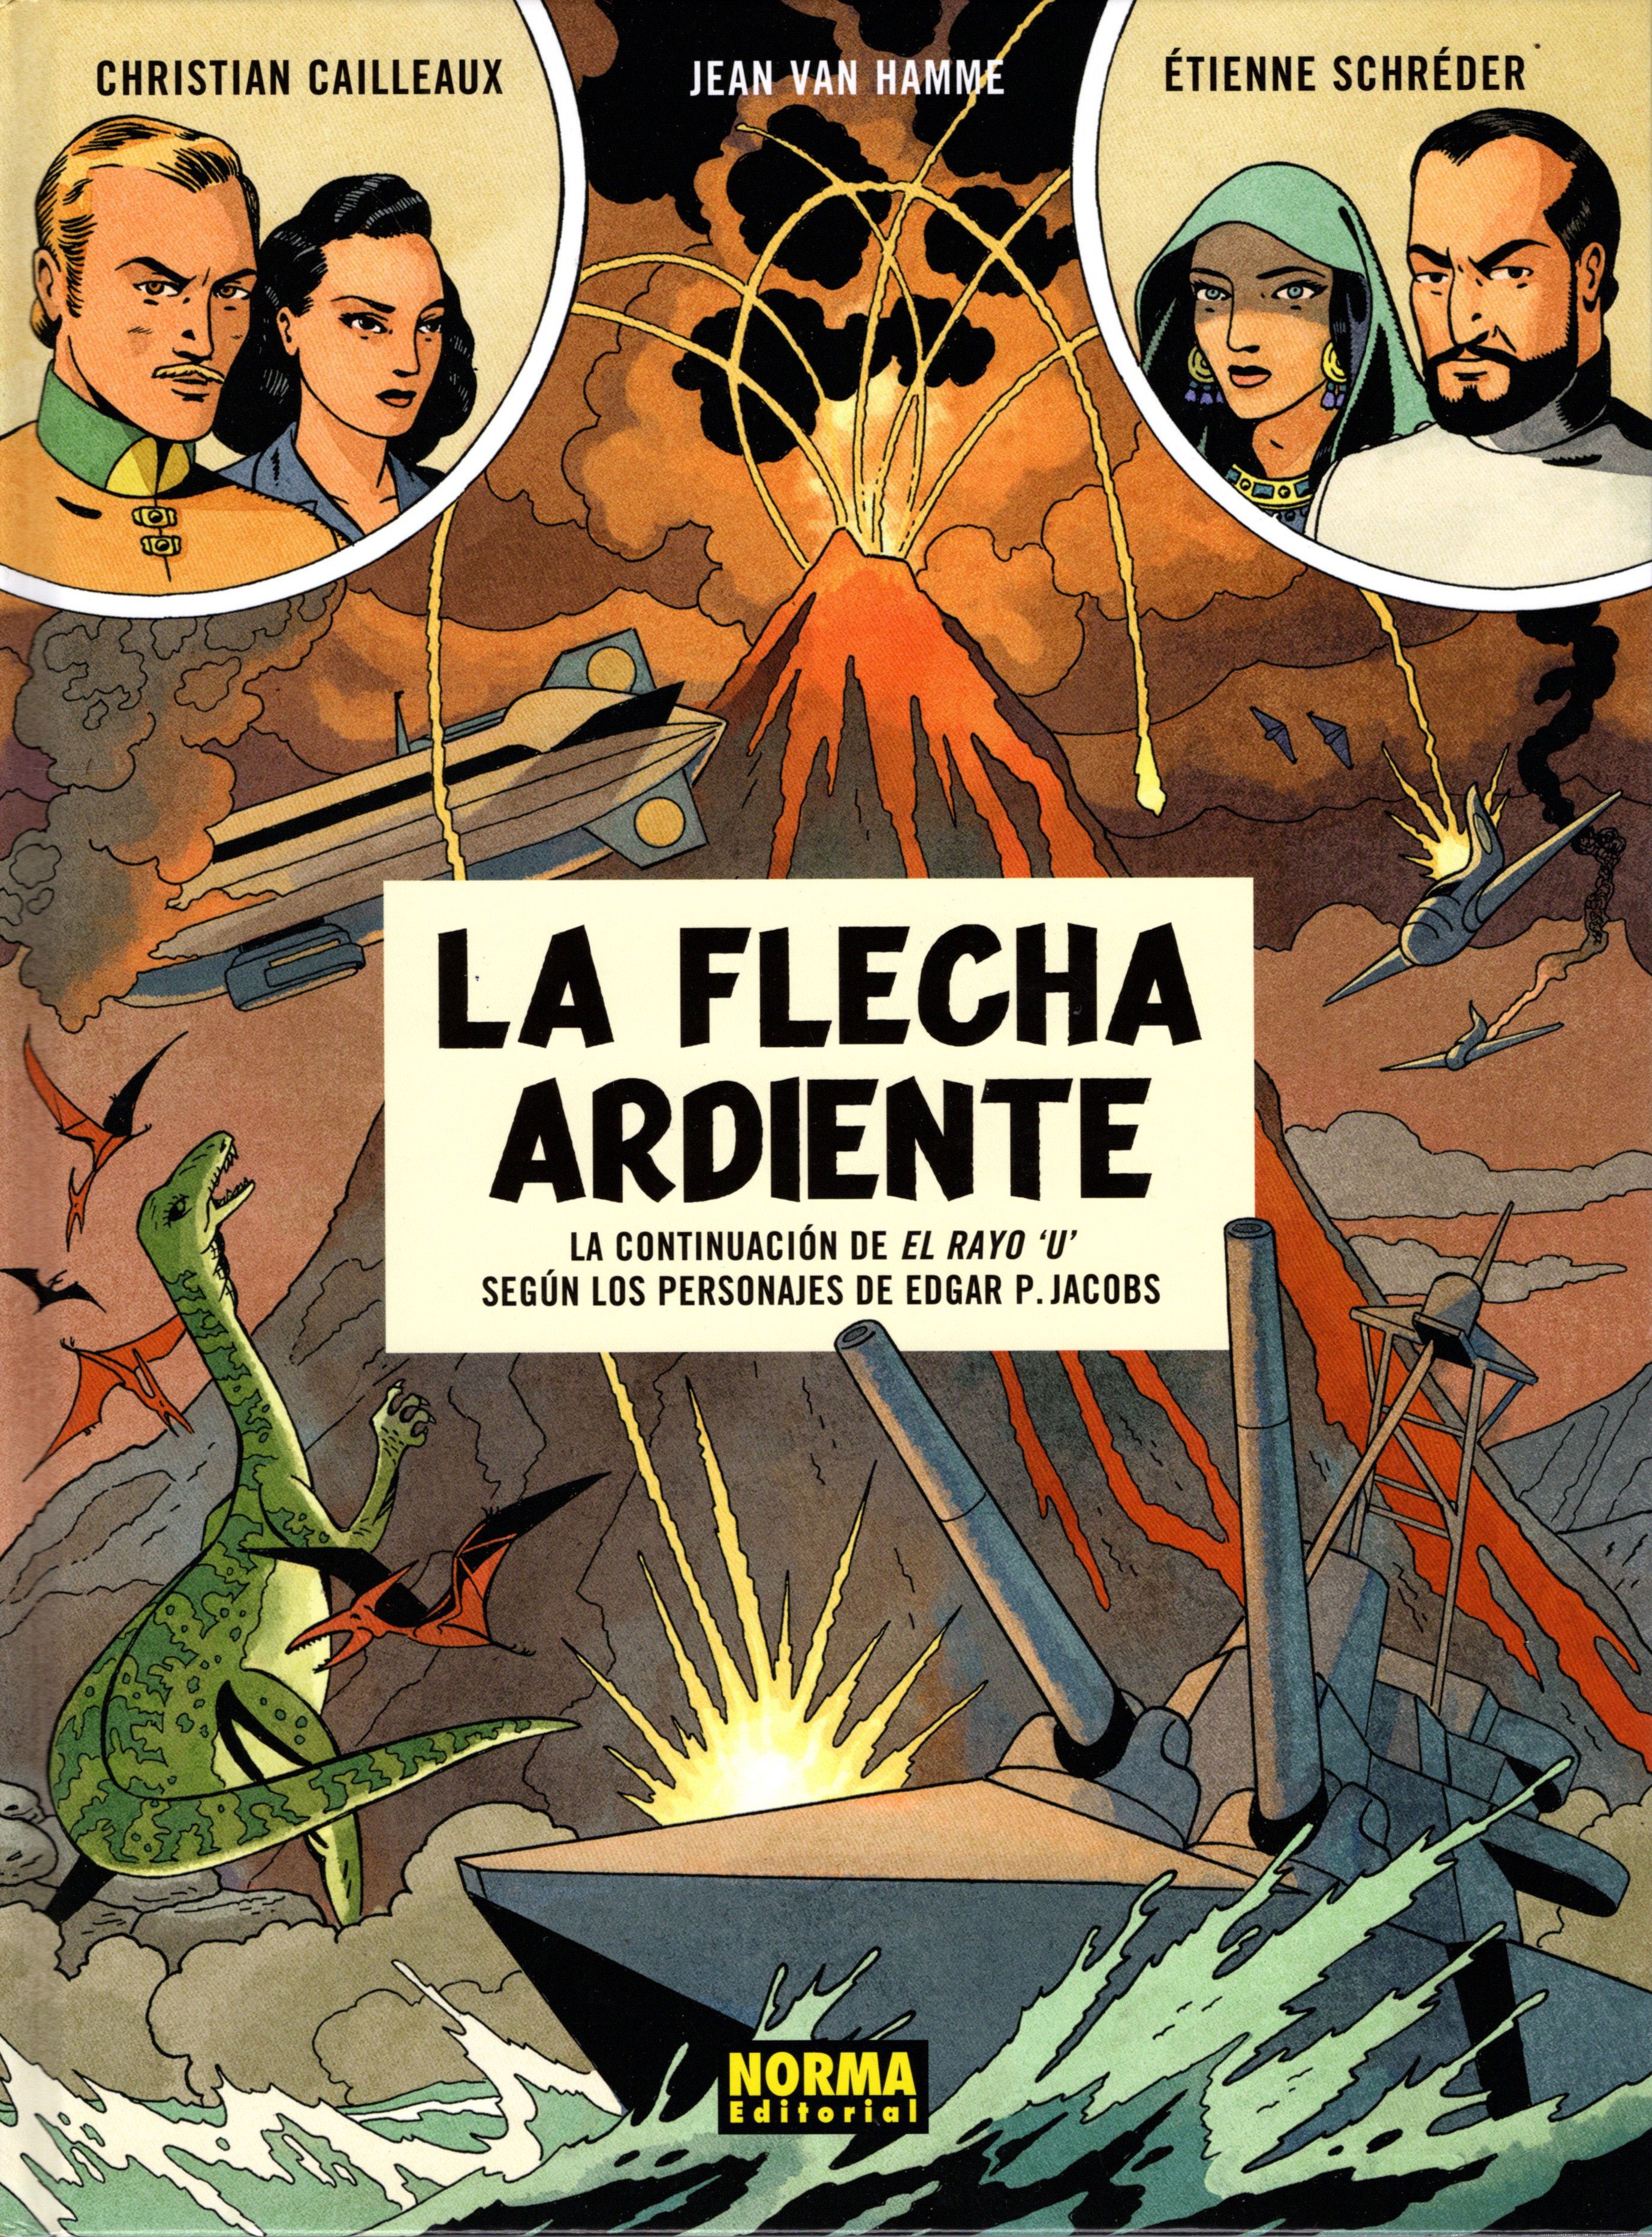 Jean Van Hamme, Christian Cailleaux, Étienne Schréder: La flecha ardiente (Spanish language, Norma Editorial)